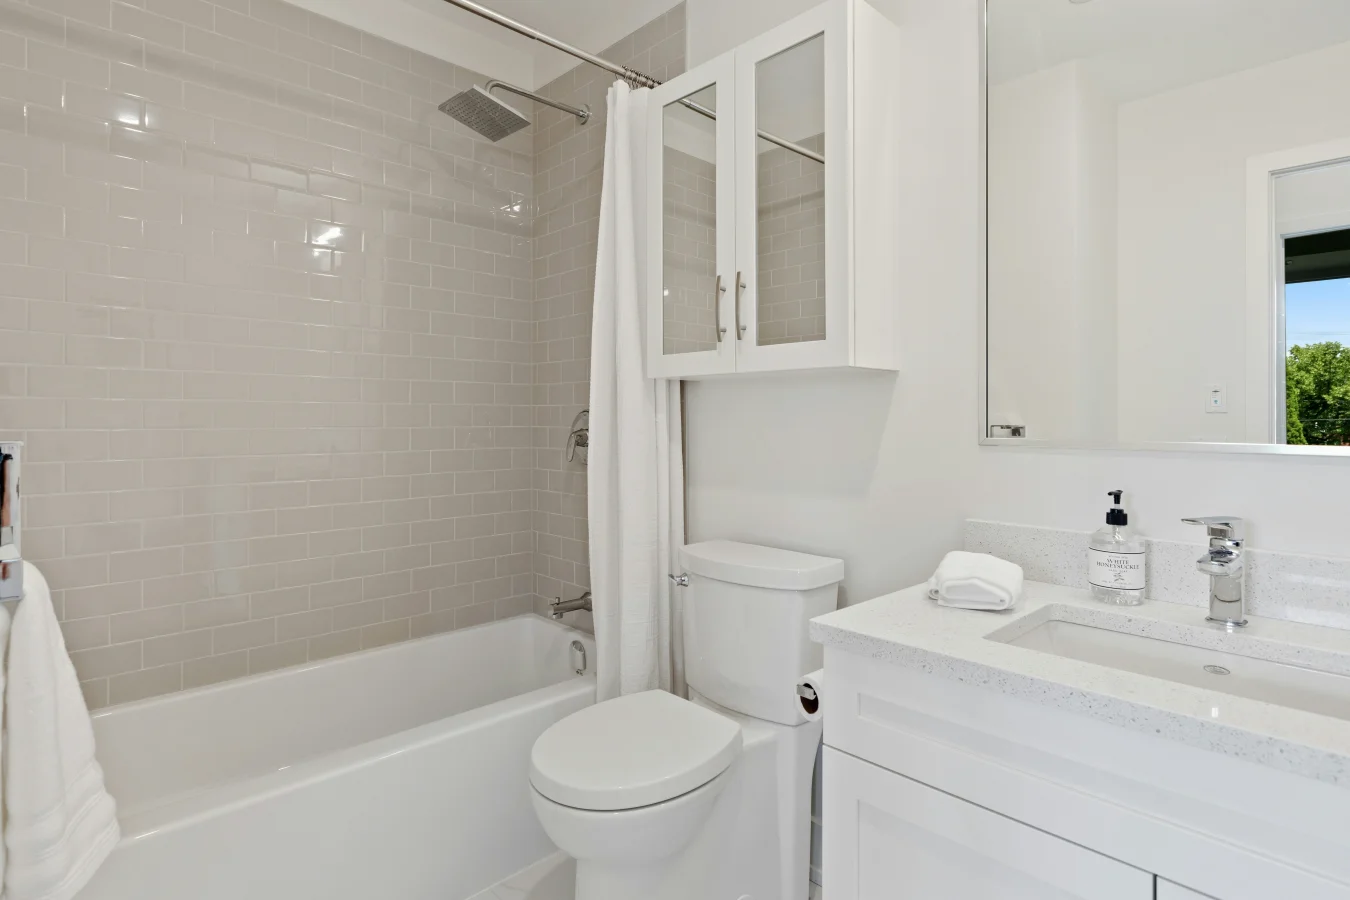 Biały kolor i wanna z prysznicem to pomysł na małą łazienkę.